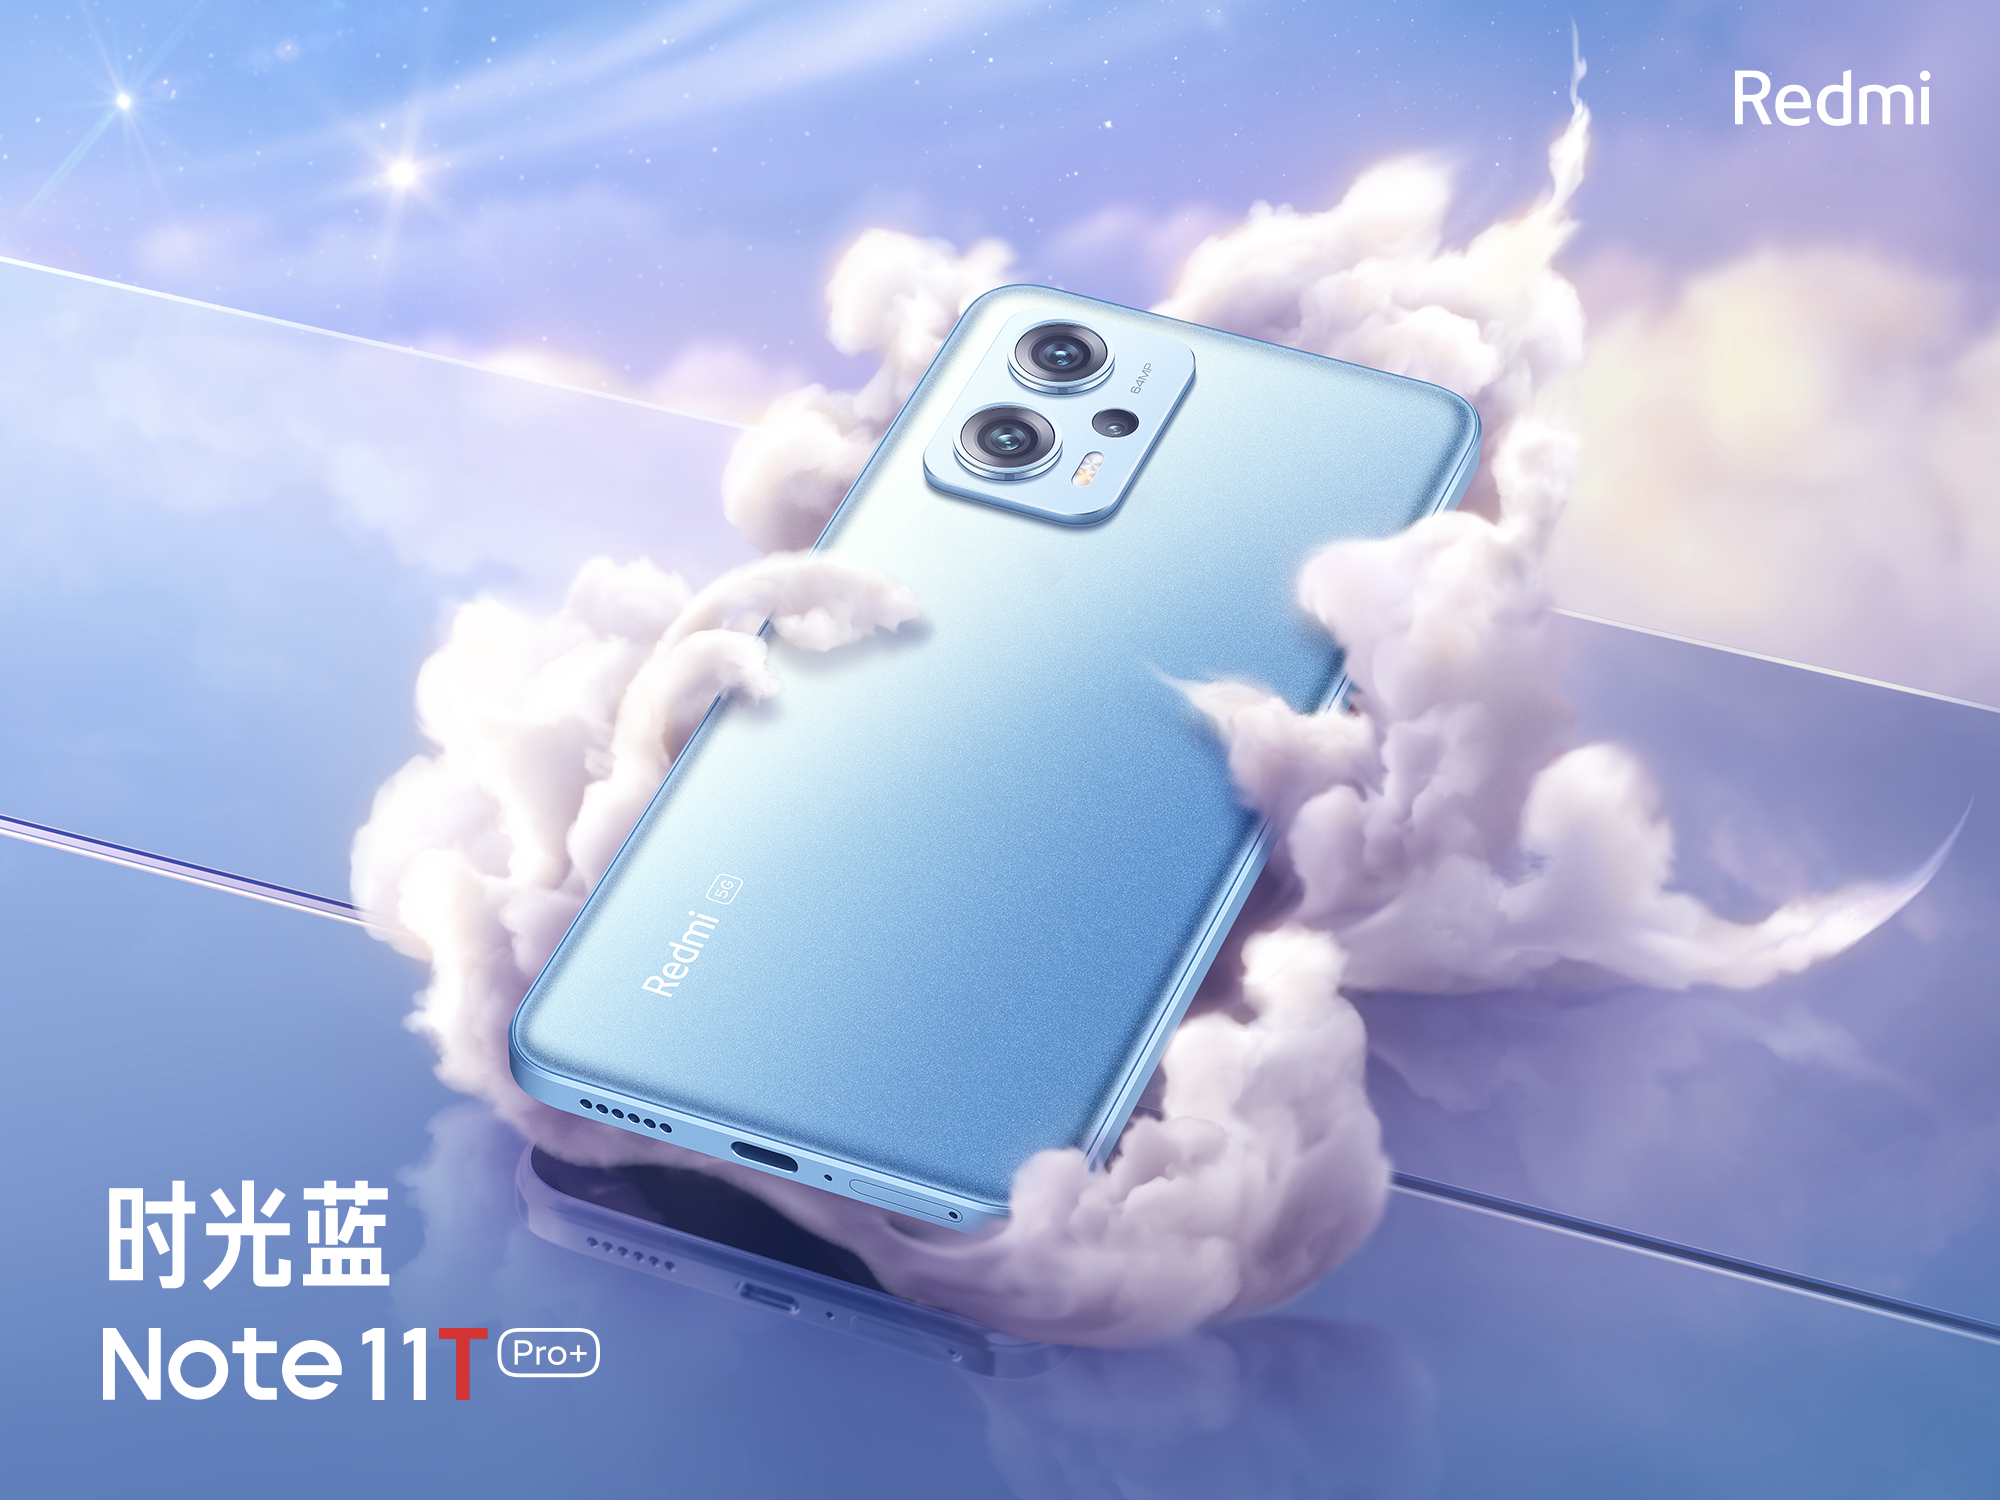 Das Redmi Note 11T Pro+ ist das erste Smartphone in der Geschichte der Serie mit 512 GB Speicher